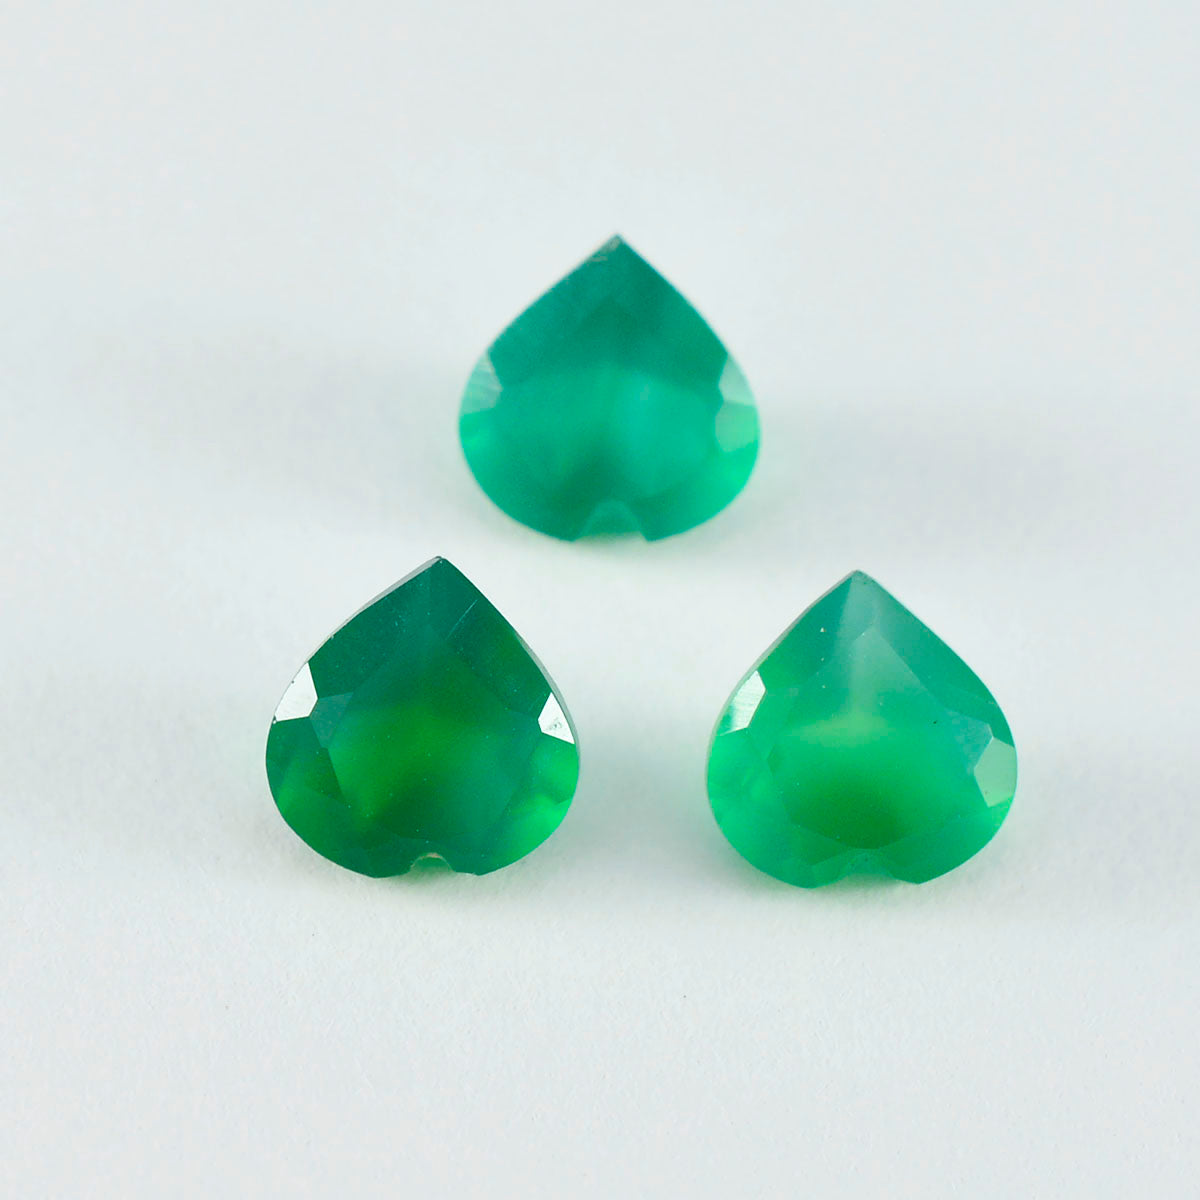 Riyogems 1 Stück echter grüner Onyx, facettiert, 7 x 7 mm, Herzform, hübsche Qualitätsedelsteine